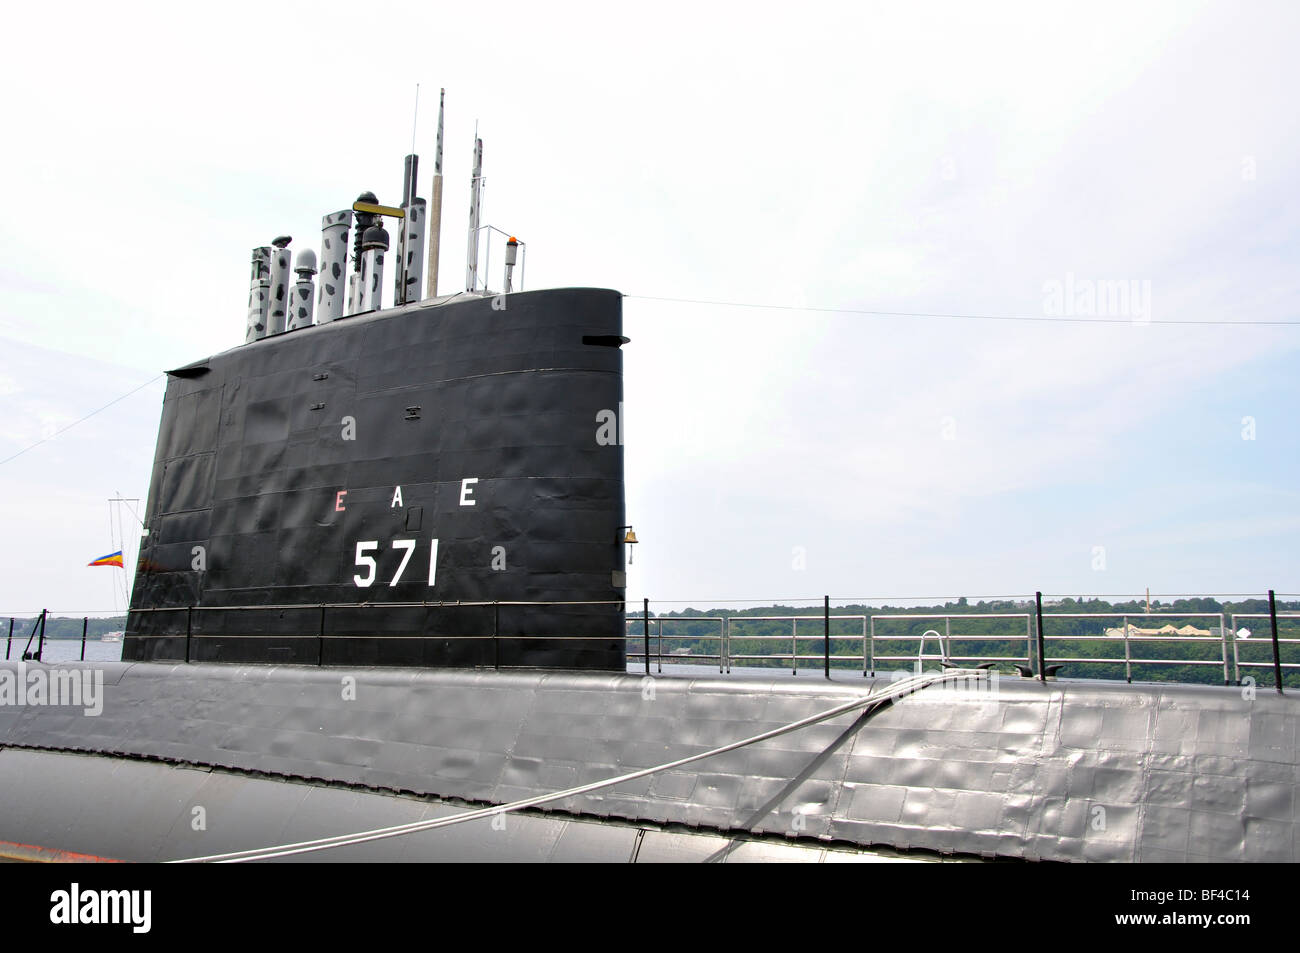 Nautilus - le 1er sous-marin nucléaire américain (aujourd'hui musée), Groton, Connecticut, USA Banque D'Images